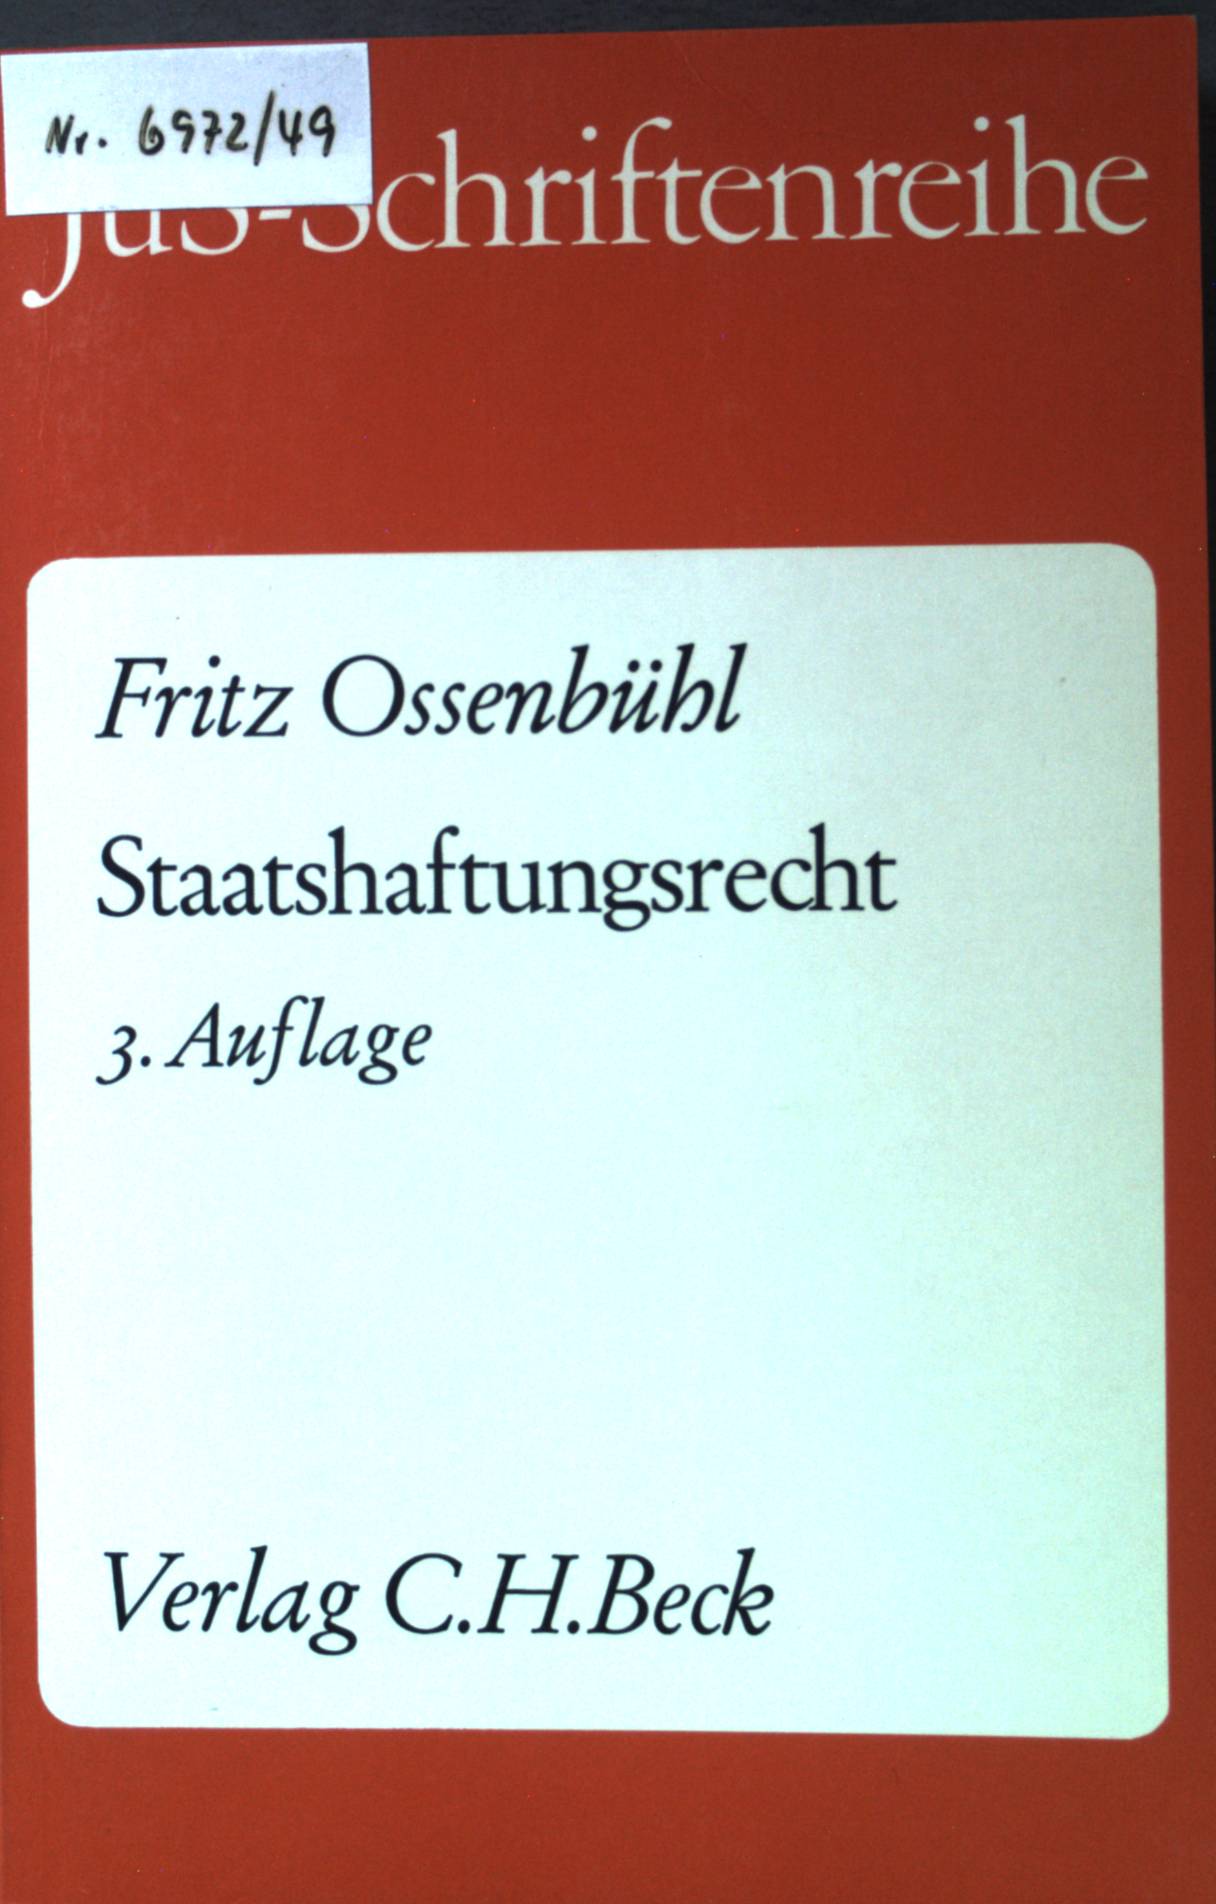 Staatshaftungsrecht. Schriftenreihe der Juristischen Schulung Heft 15. 3., neubearb. Auflage; - Ossenbühl, Fritz